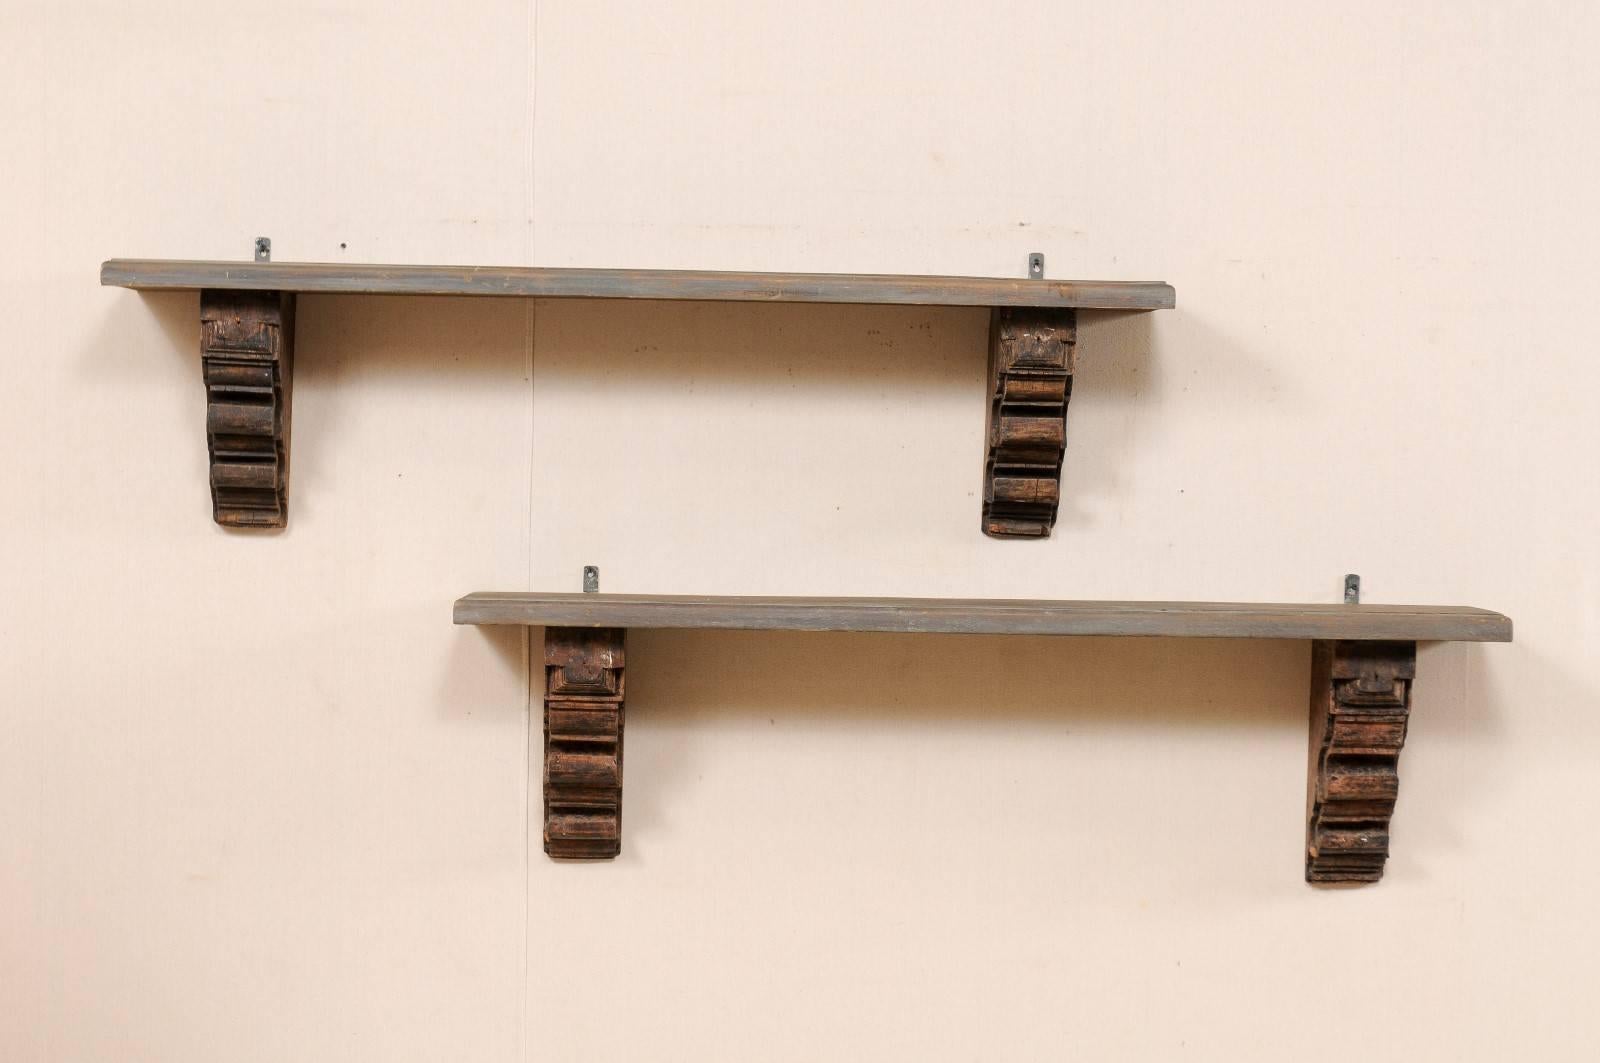 Une paire d'étagères en bois de style italien façonnées à partir de vieux supports sculptés. Cette paire d'étagères présente des consoles magnifiquement sculptées, qui soutiennent le dessous de chaque étagère à chaque extrémité. Les plateaux ont un